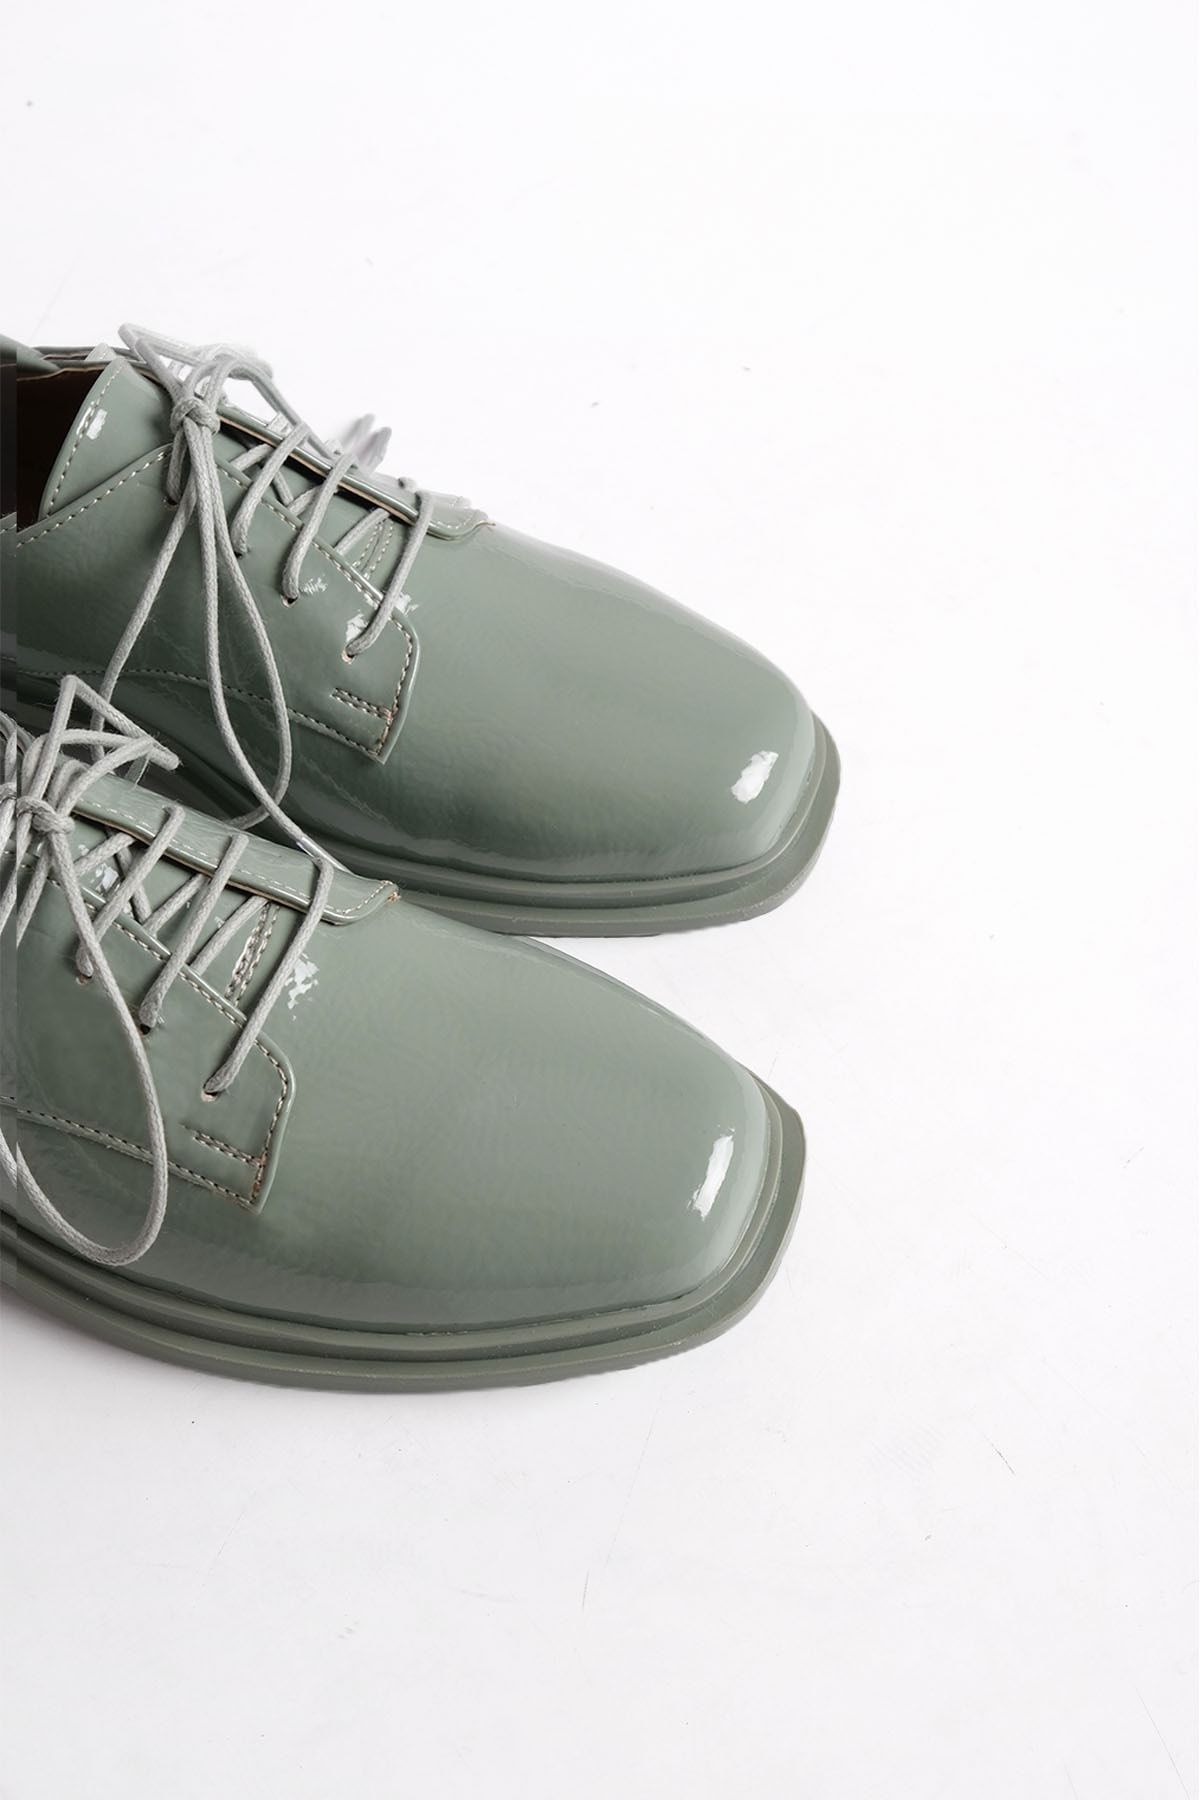 Marjin Kadın Oxford Ayakkabı Küt Burun Bağcıklı Maskülen Günlük Ayakkabı Rilen yeşil Rugan